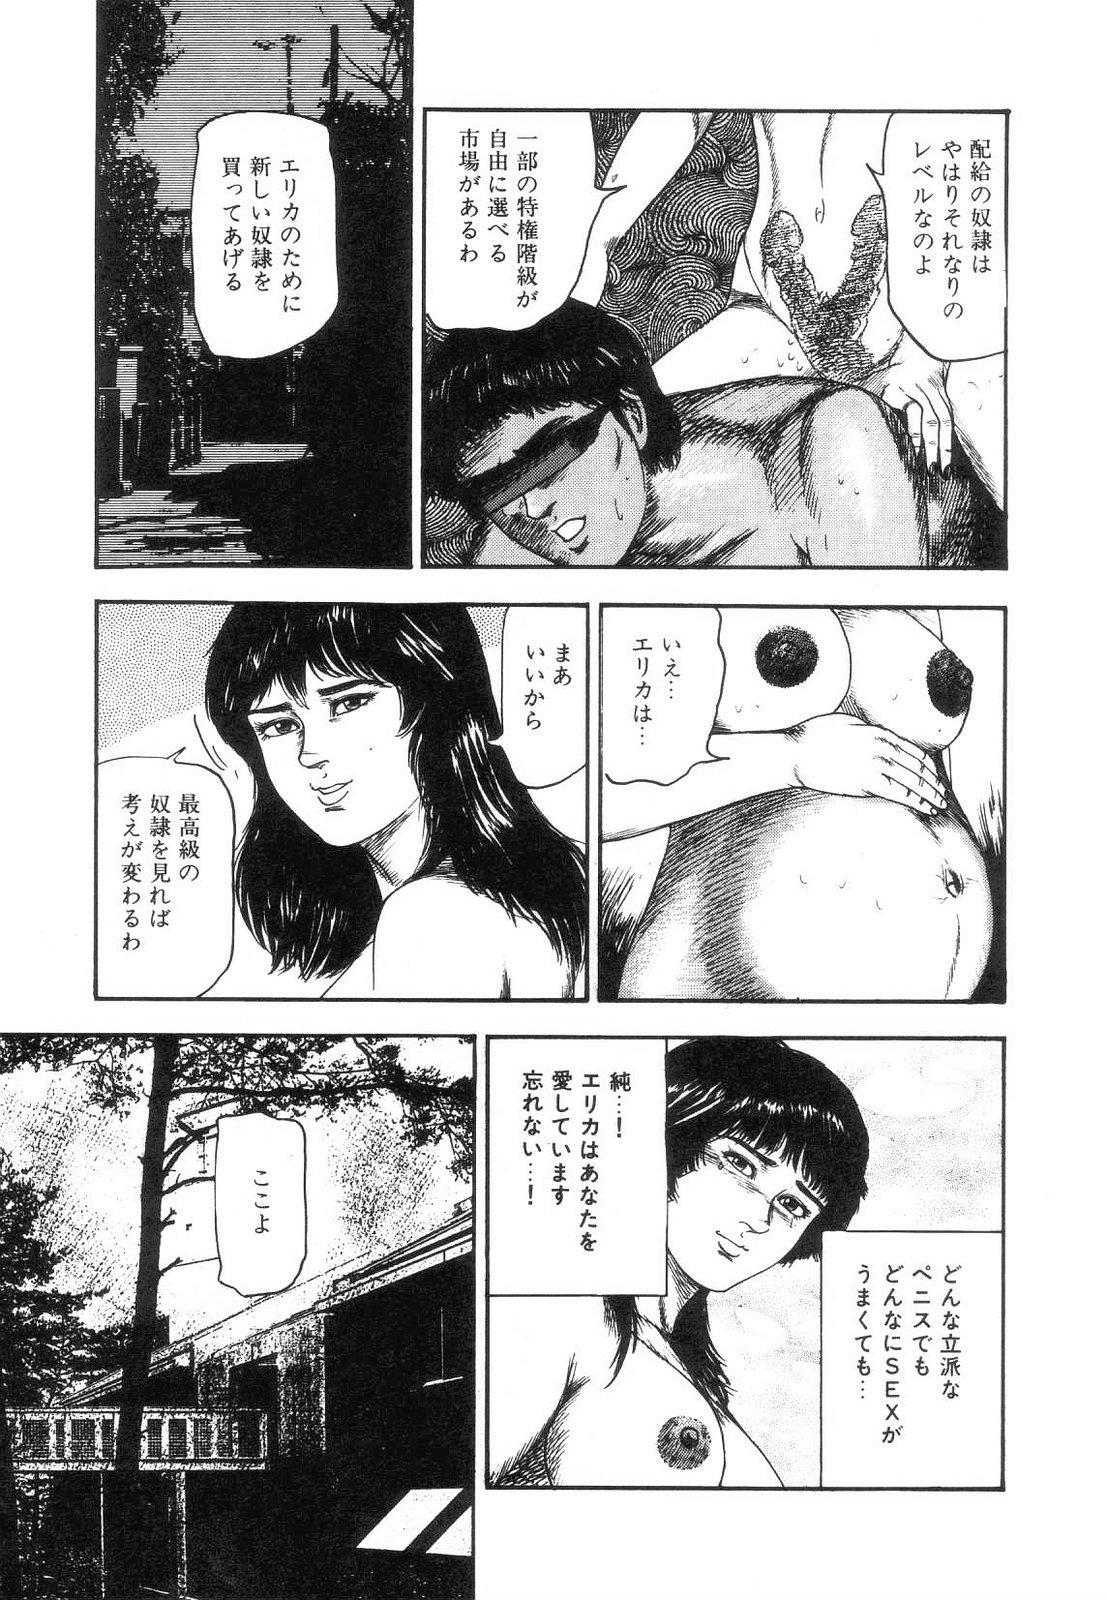 Shiro no Mokushiroku Vol. 5 - Ninshoujo Erika no Shou 150